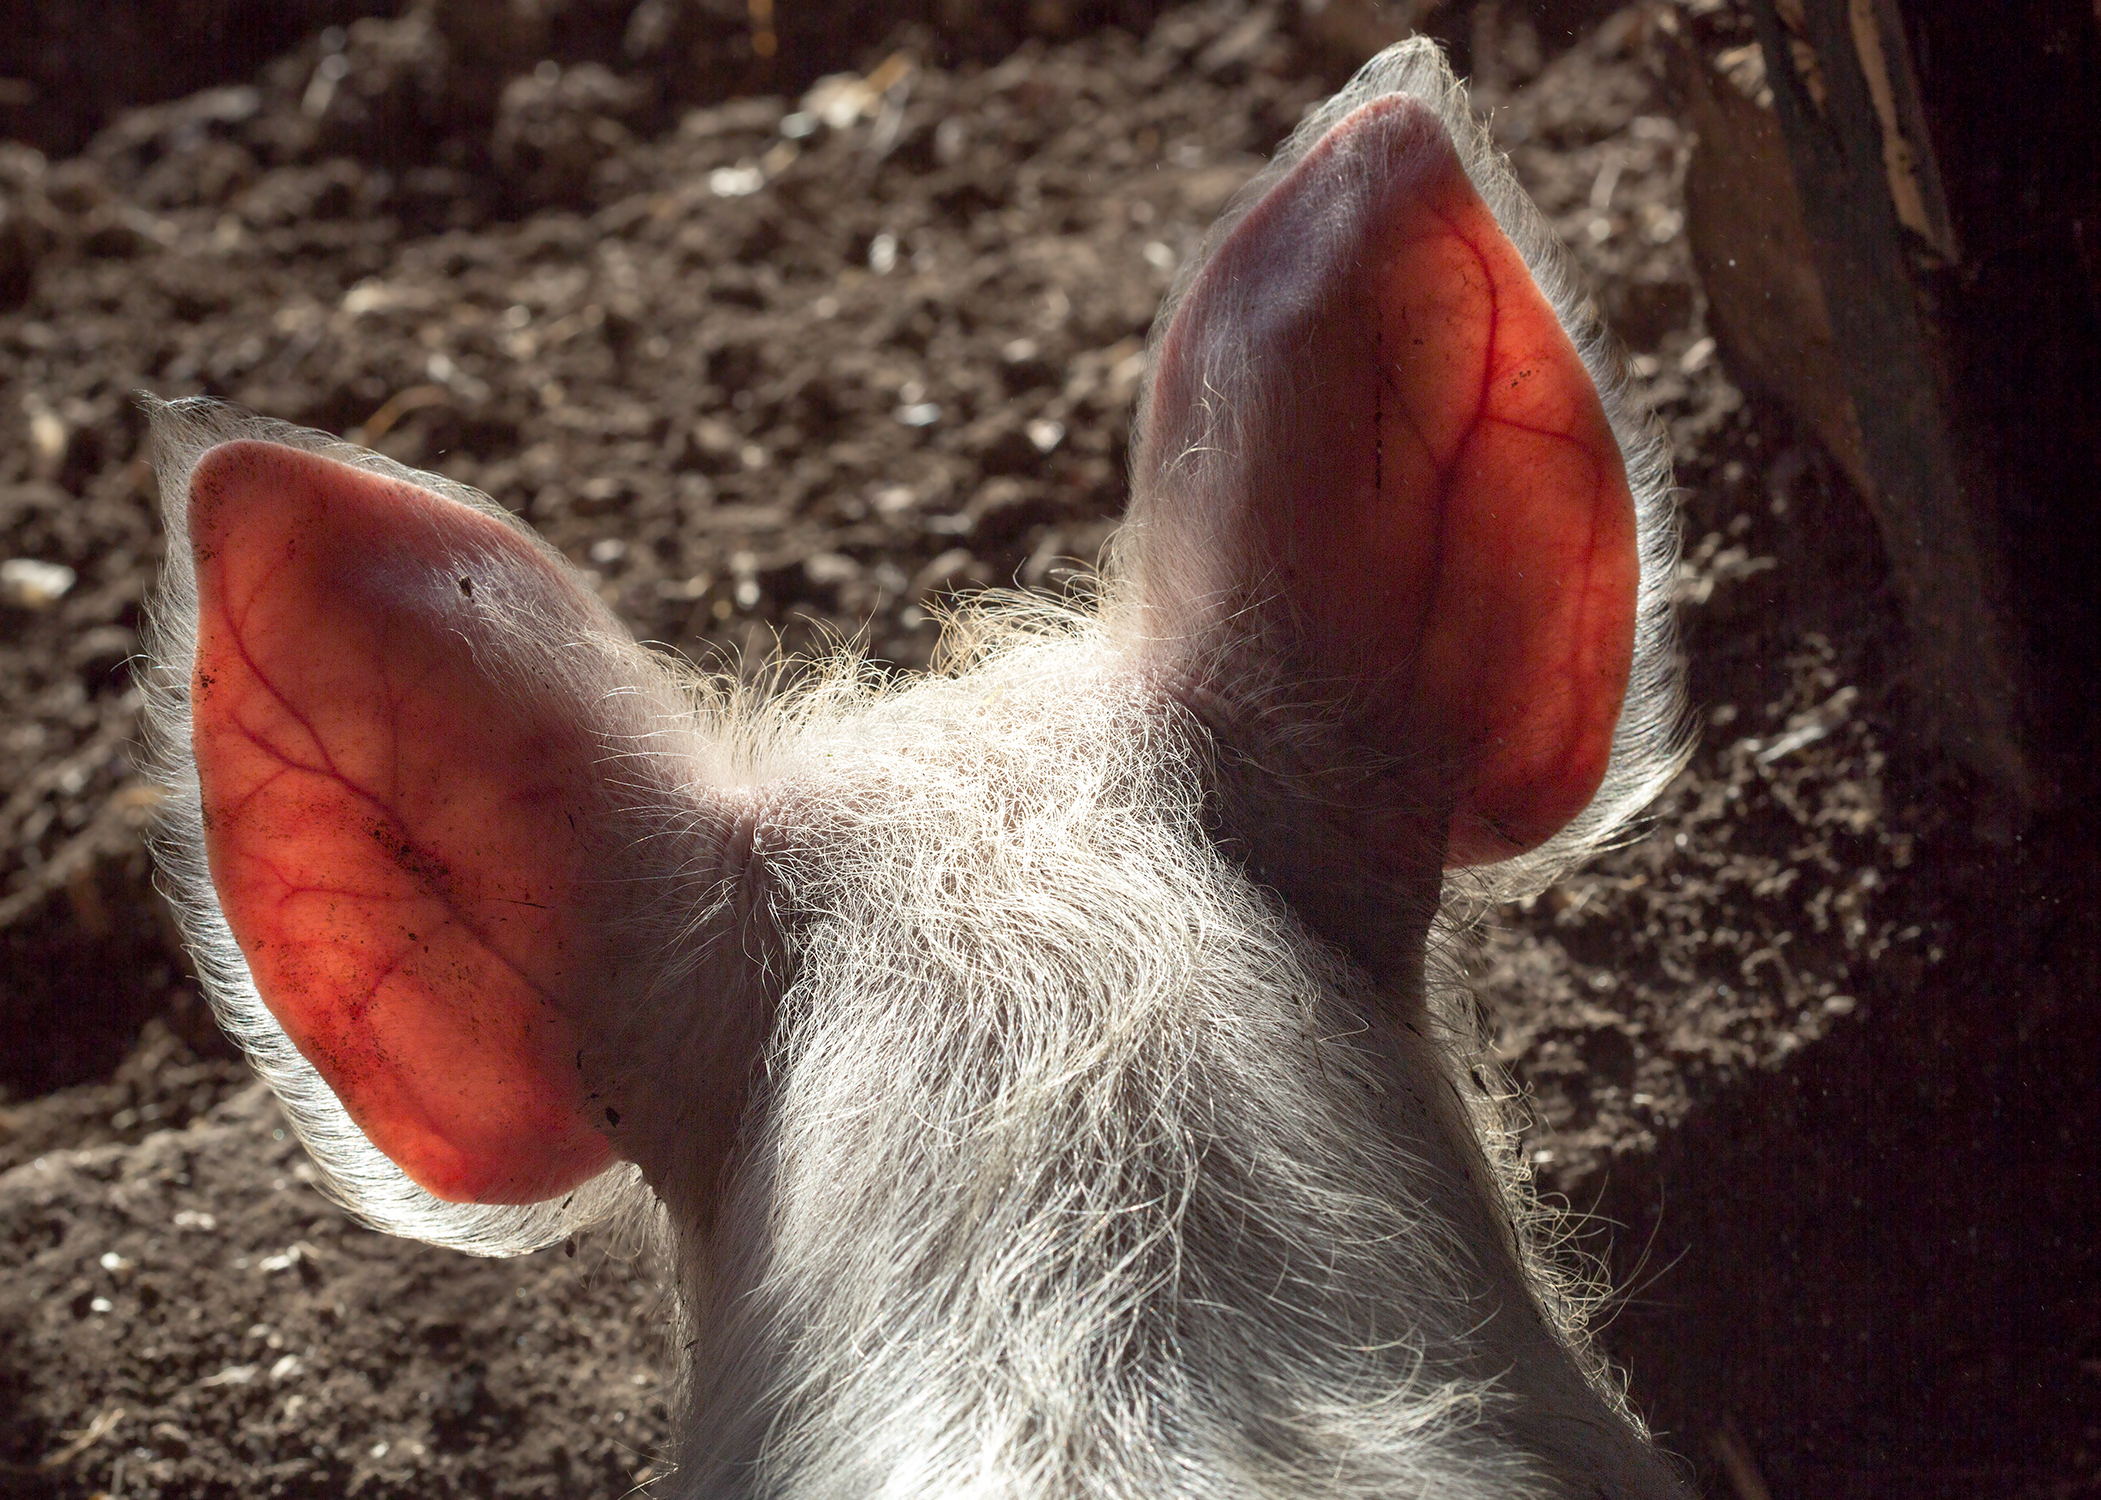 Pig's ears